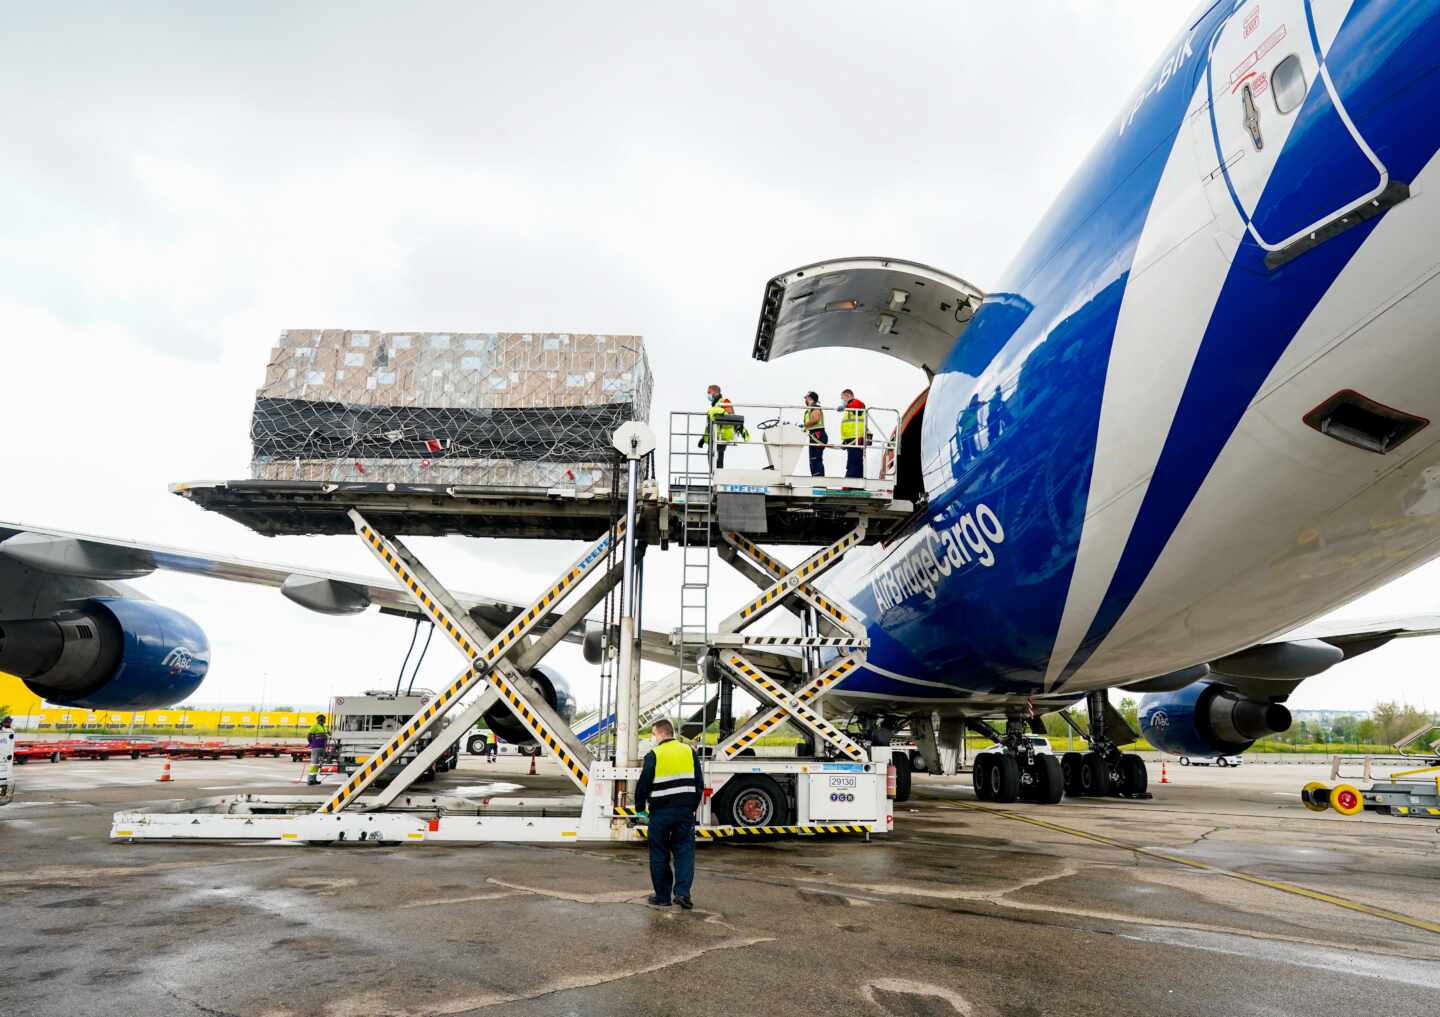 Descarga de material sanitario de un avión, procedente de China, en el aeropuerto Madrid-Barajas.